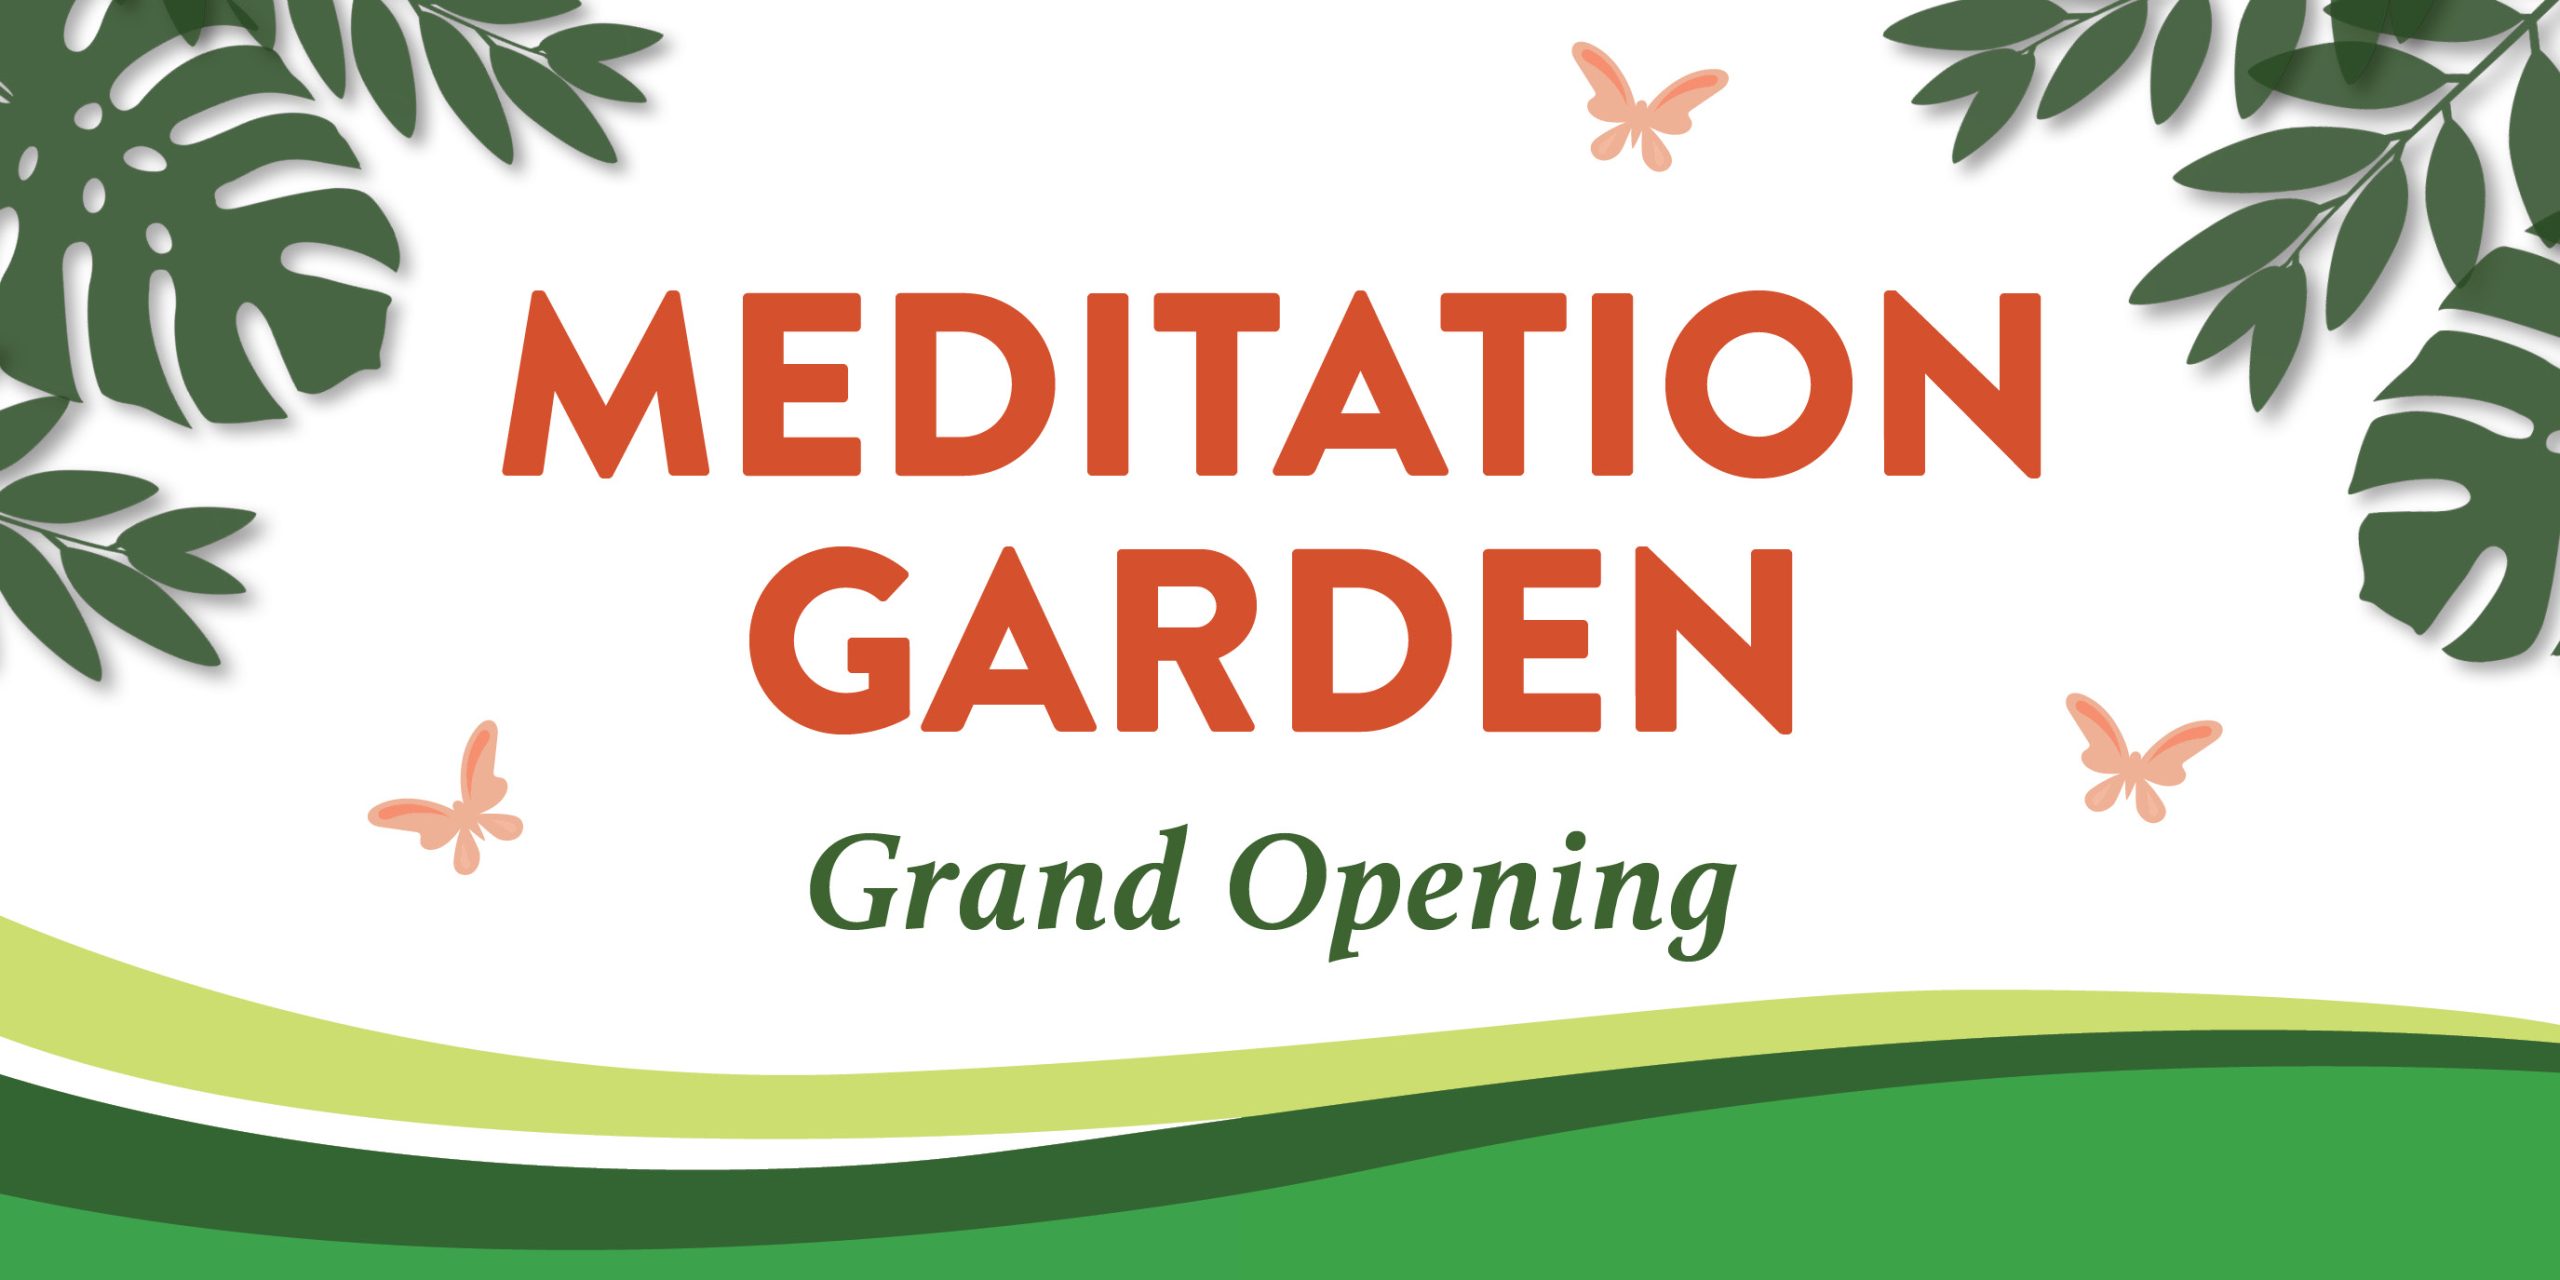 Meditation Garden Grand Opening